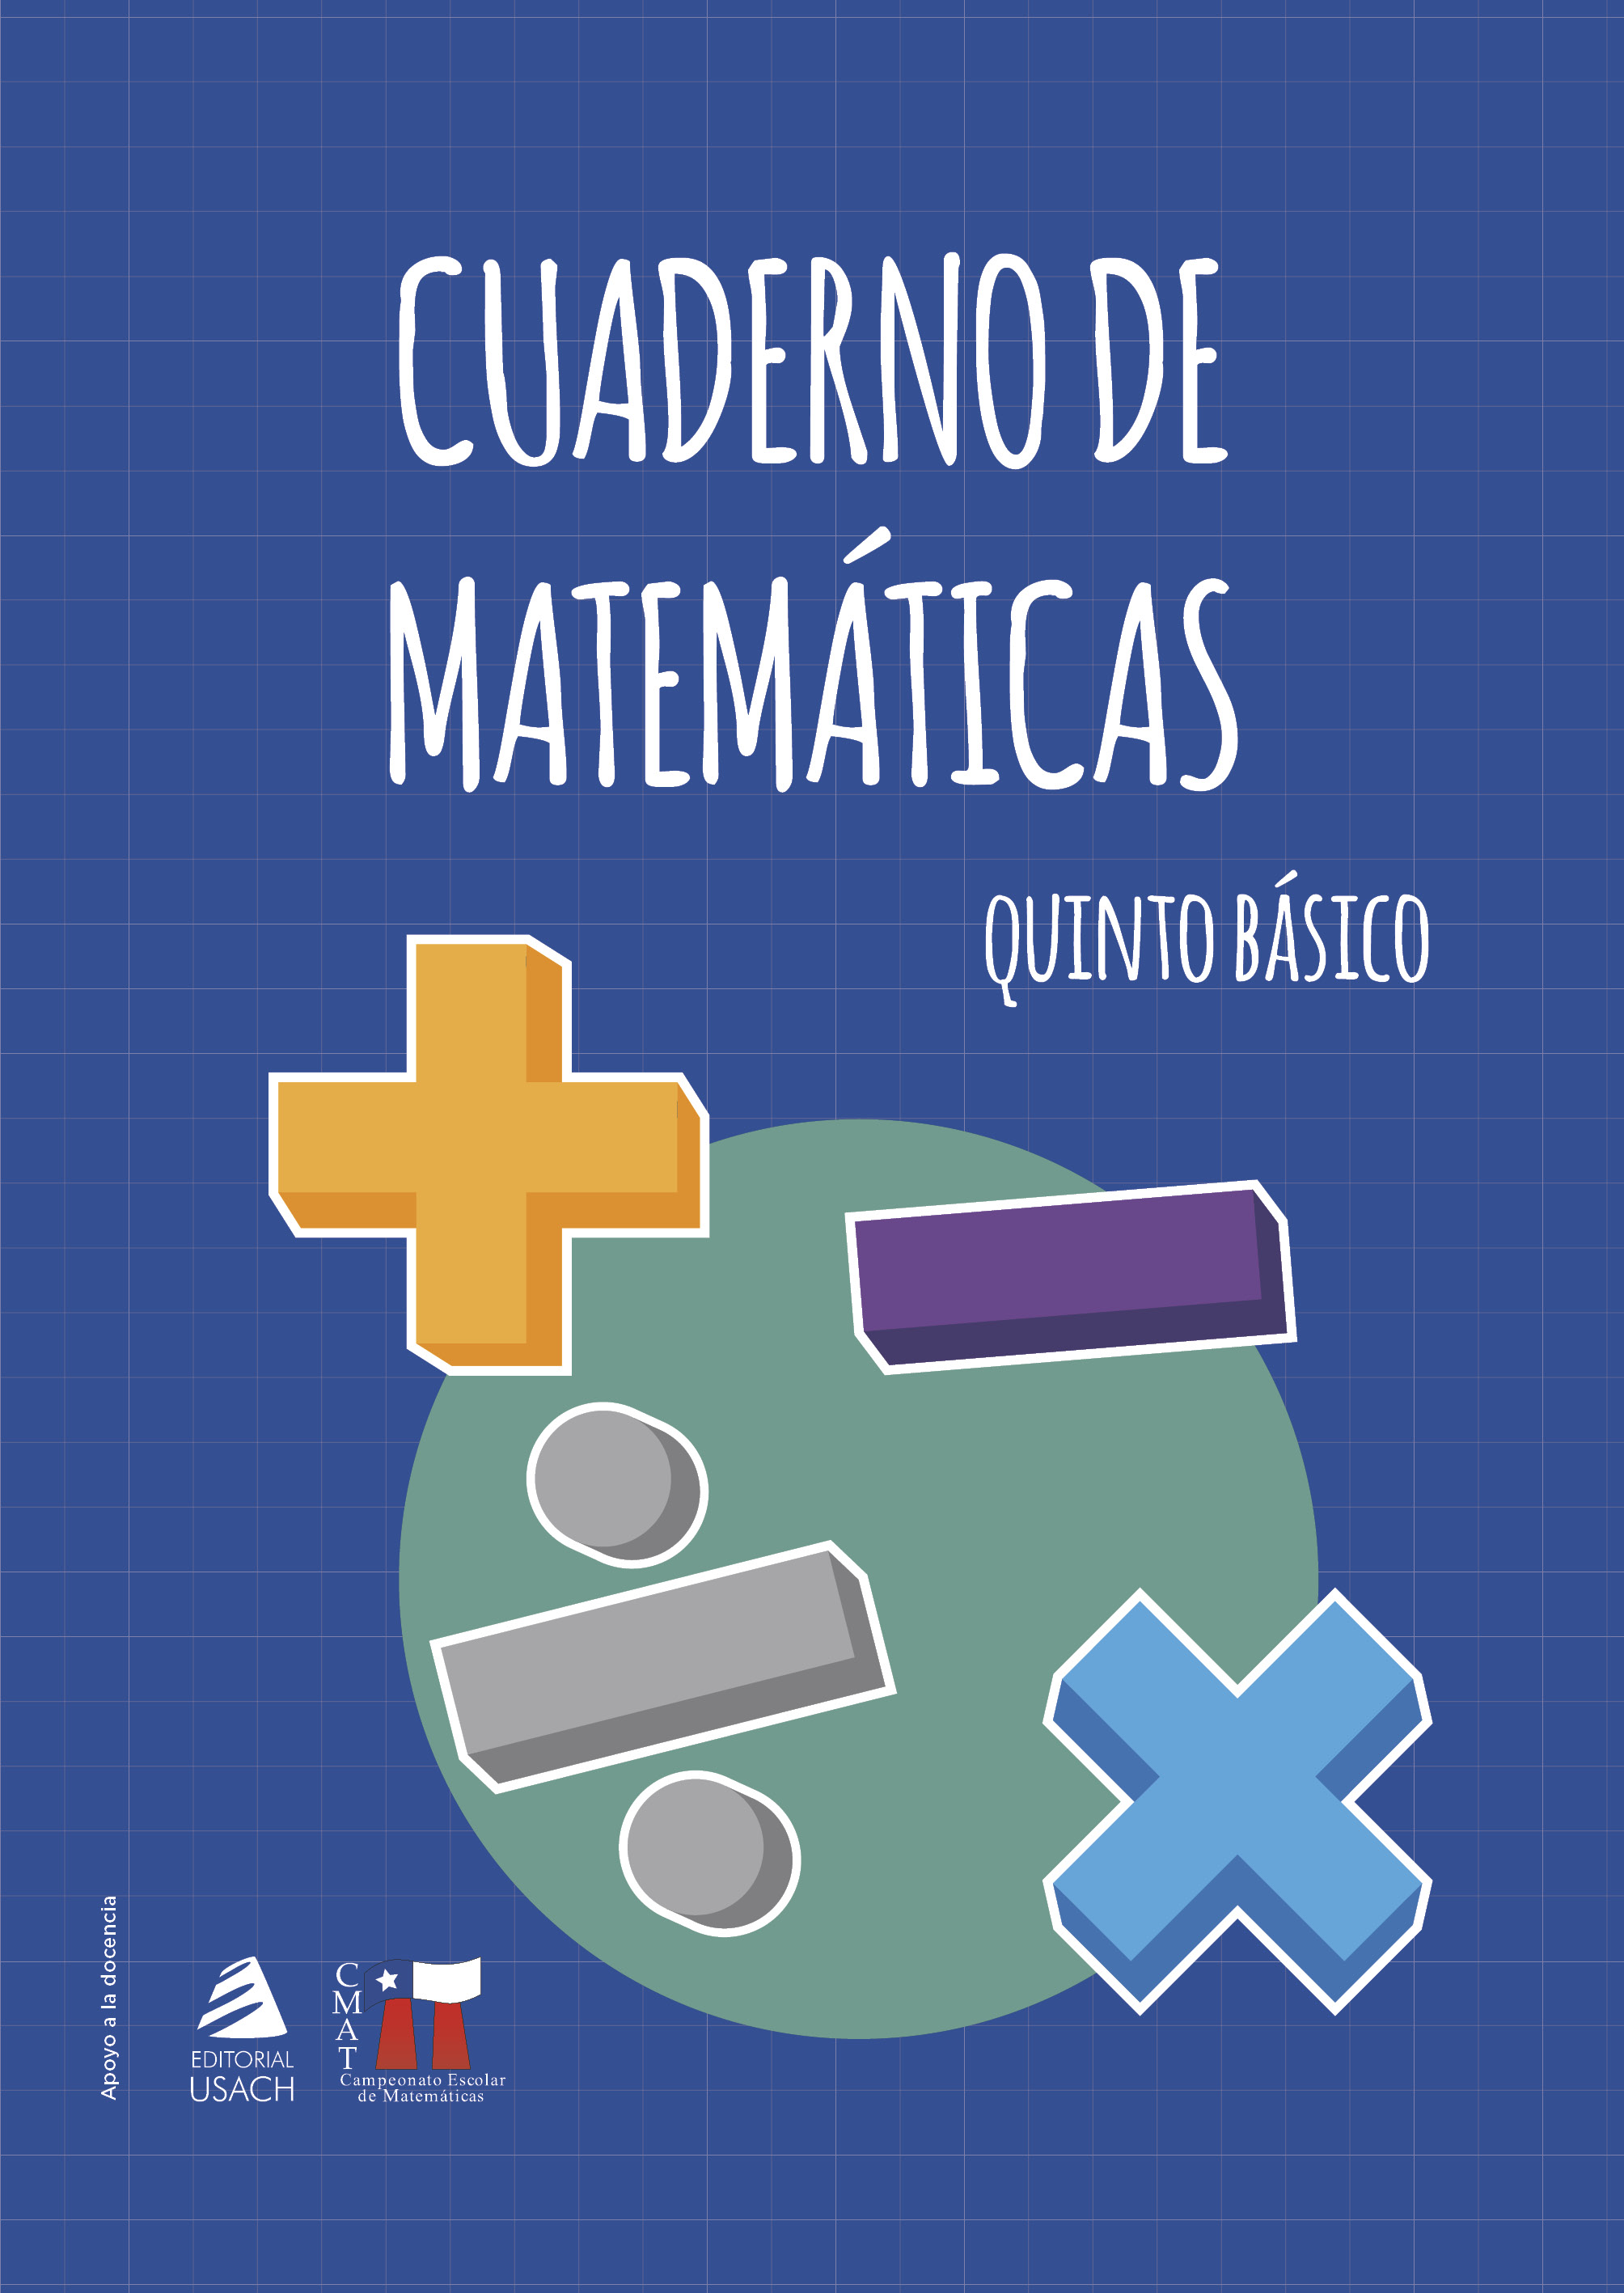 CMAT: cuaderno de matemáticas 5to básico